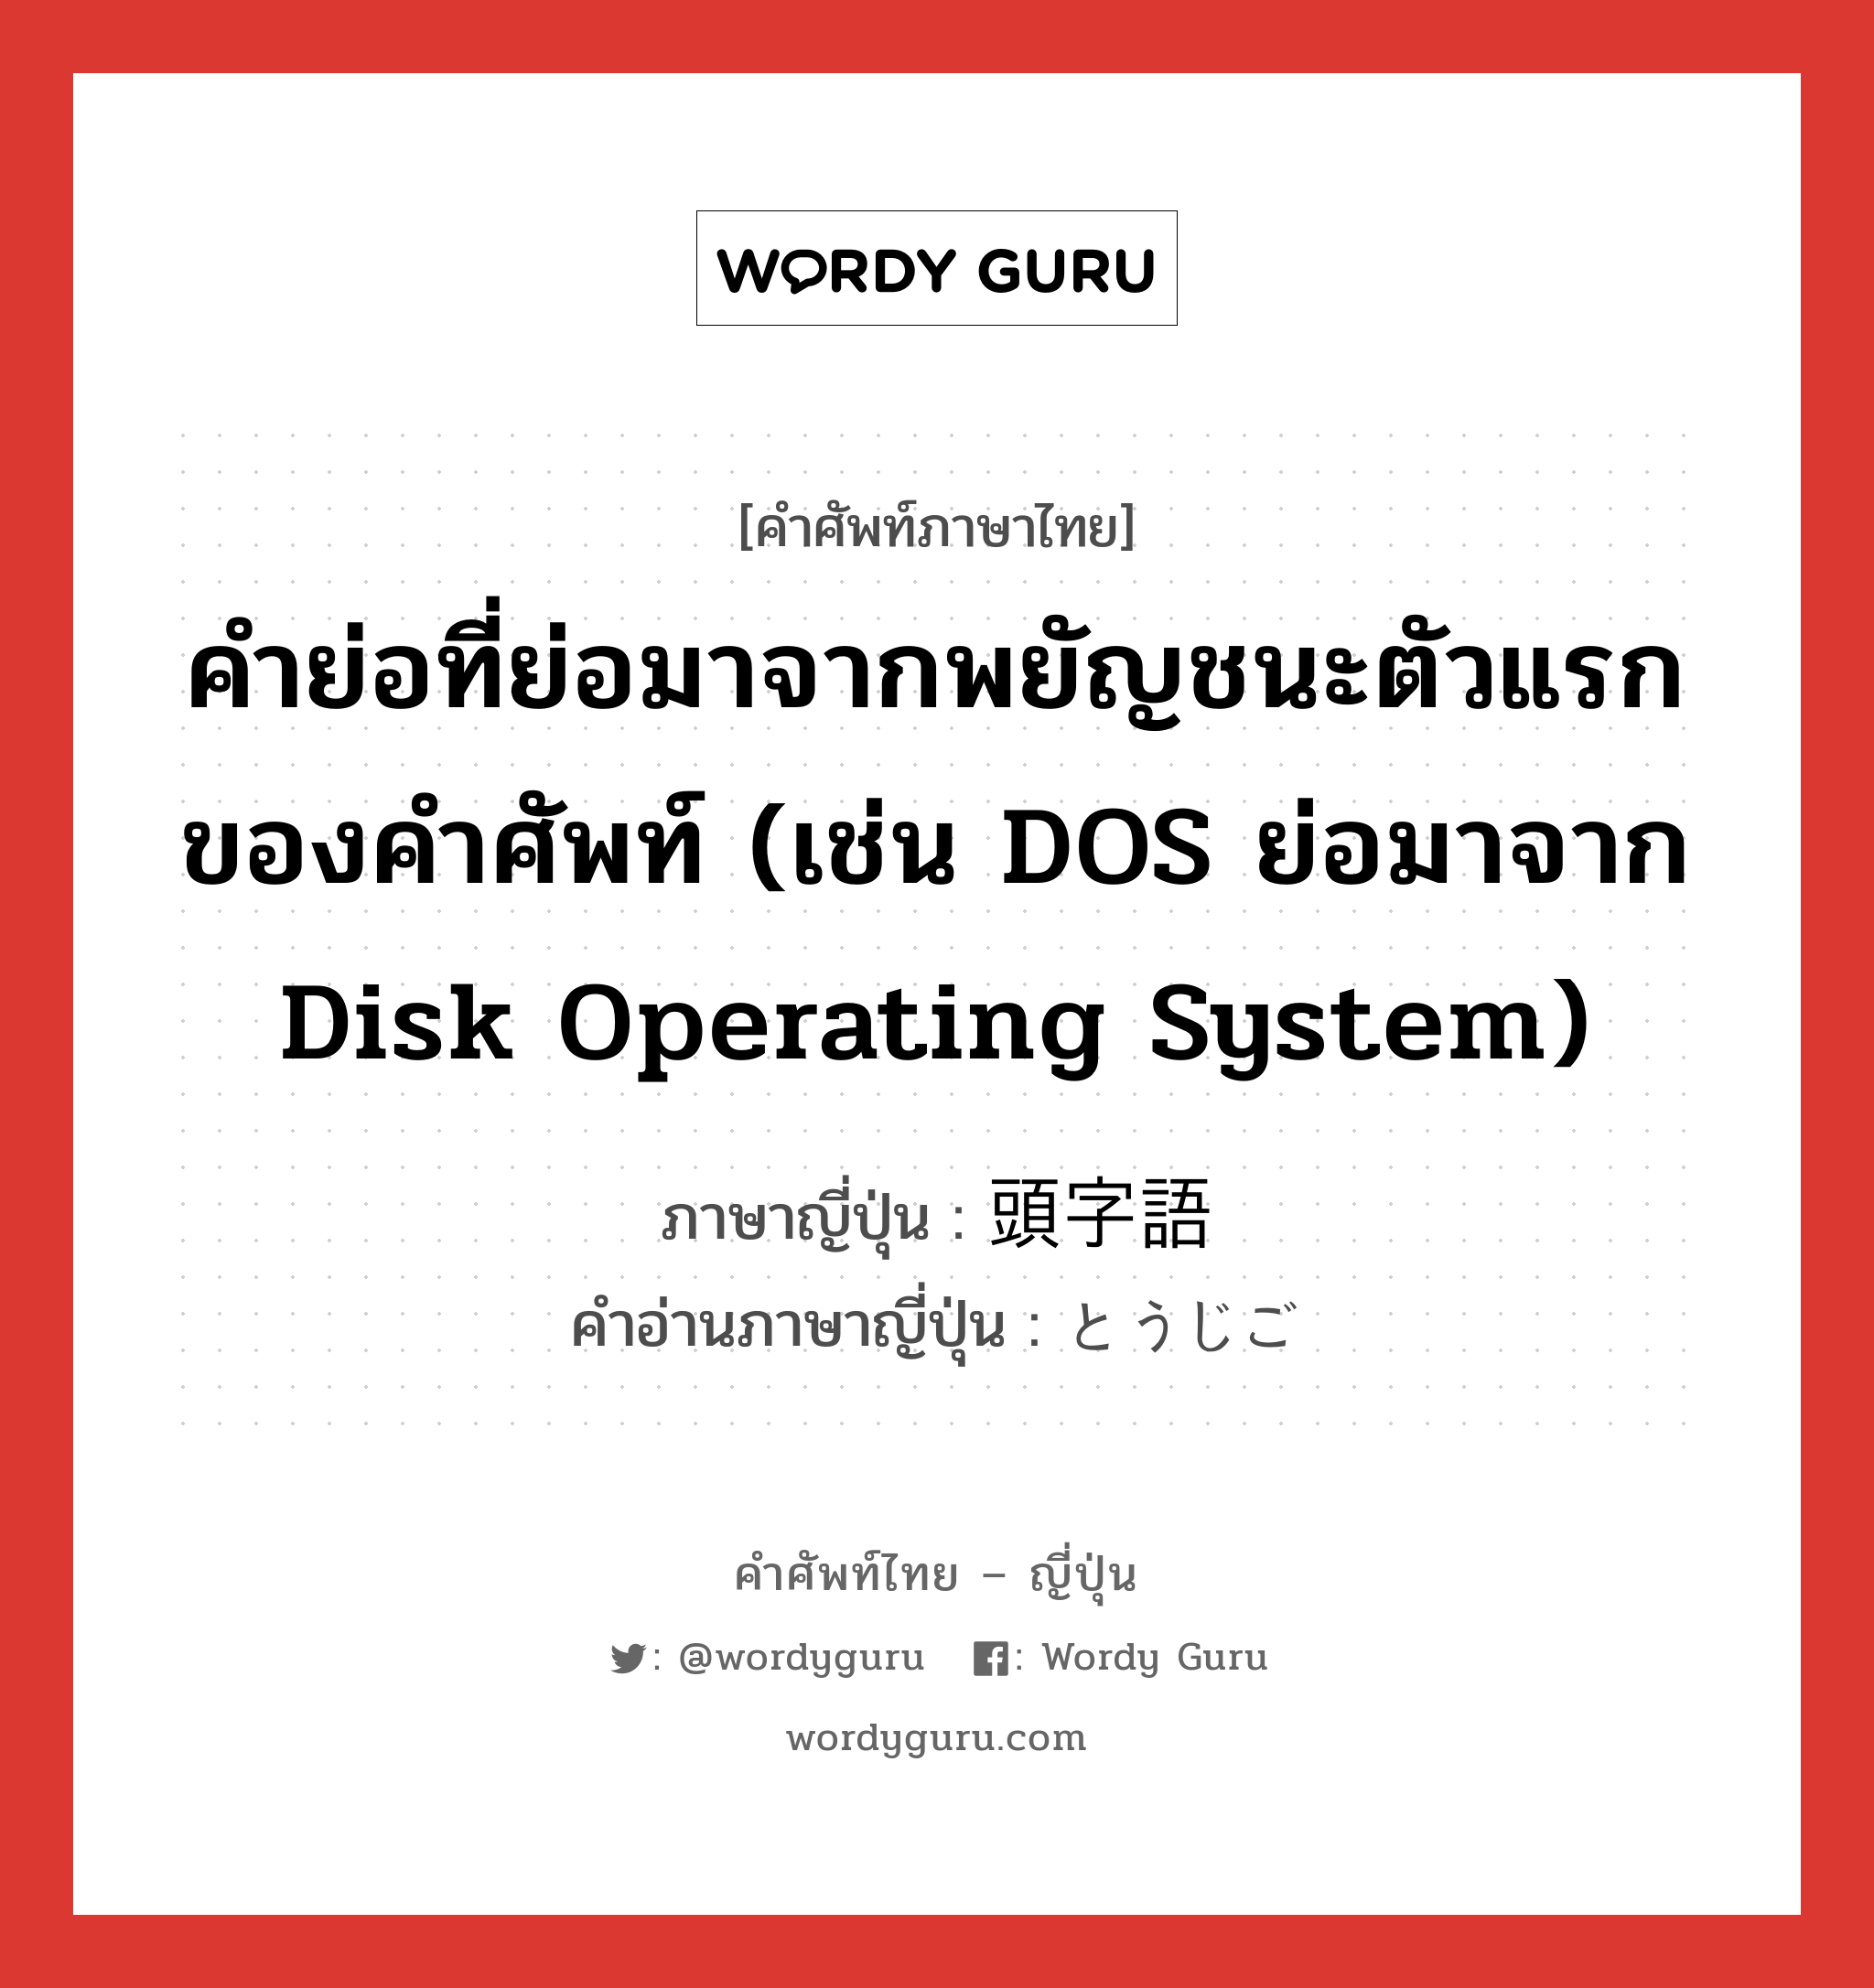 คำย่อที่ย่อมาจากพยัญชนะตัวแรกของคำศัพท์ (เช่น DOS ย่อมาจาก Disk Operating System) ภาษาญี่ปุ่นคืออะไร, คำศัพท์ภาษาไทย - ญี่ปุ่น คำย่อที่ย่อมาจากพยัญชนะตัวแรกของคำศัพท์ (เช่น DOS ย่อมาจาก Disk Operating System) ภาษาญี่ปุ่น 頭字語 คำอ่านภาษาญี่ปุ่น とうじご หมวด n หมวด n